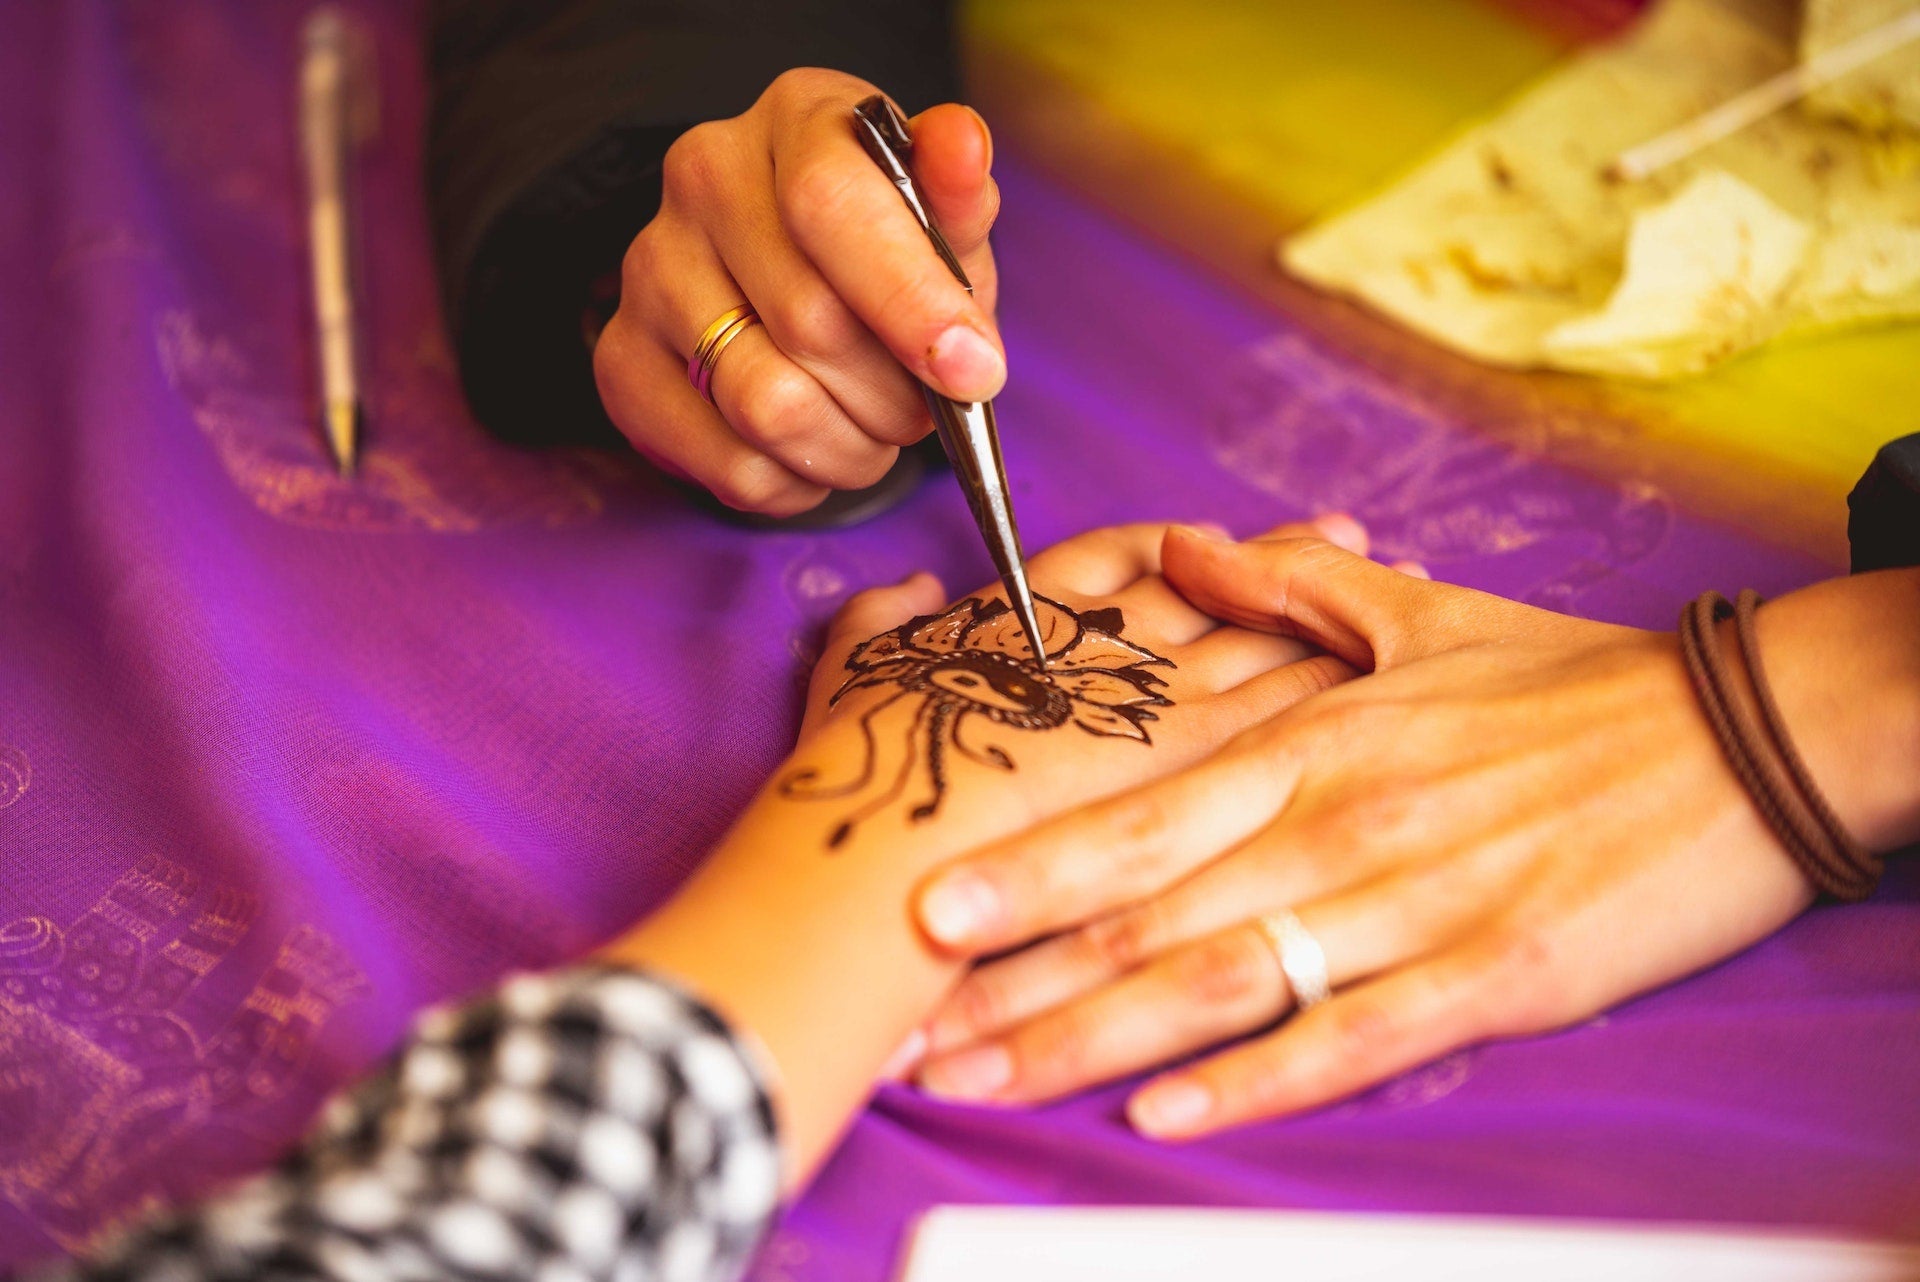 Henna Hands - With Gel Pens Kids Activities Blog